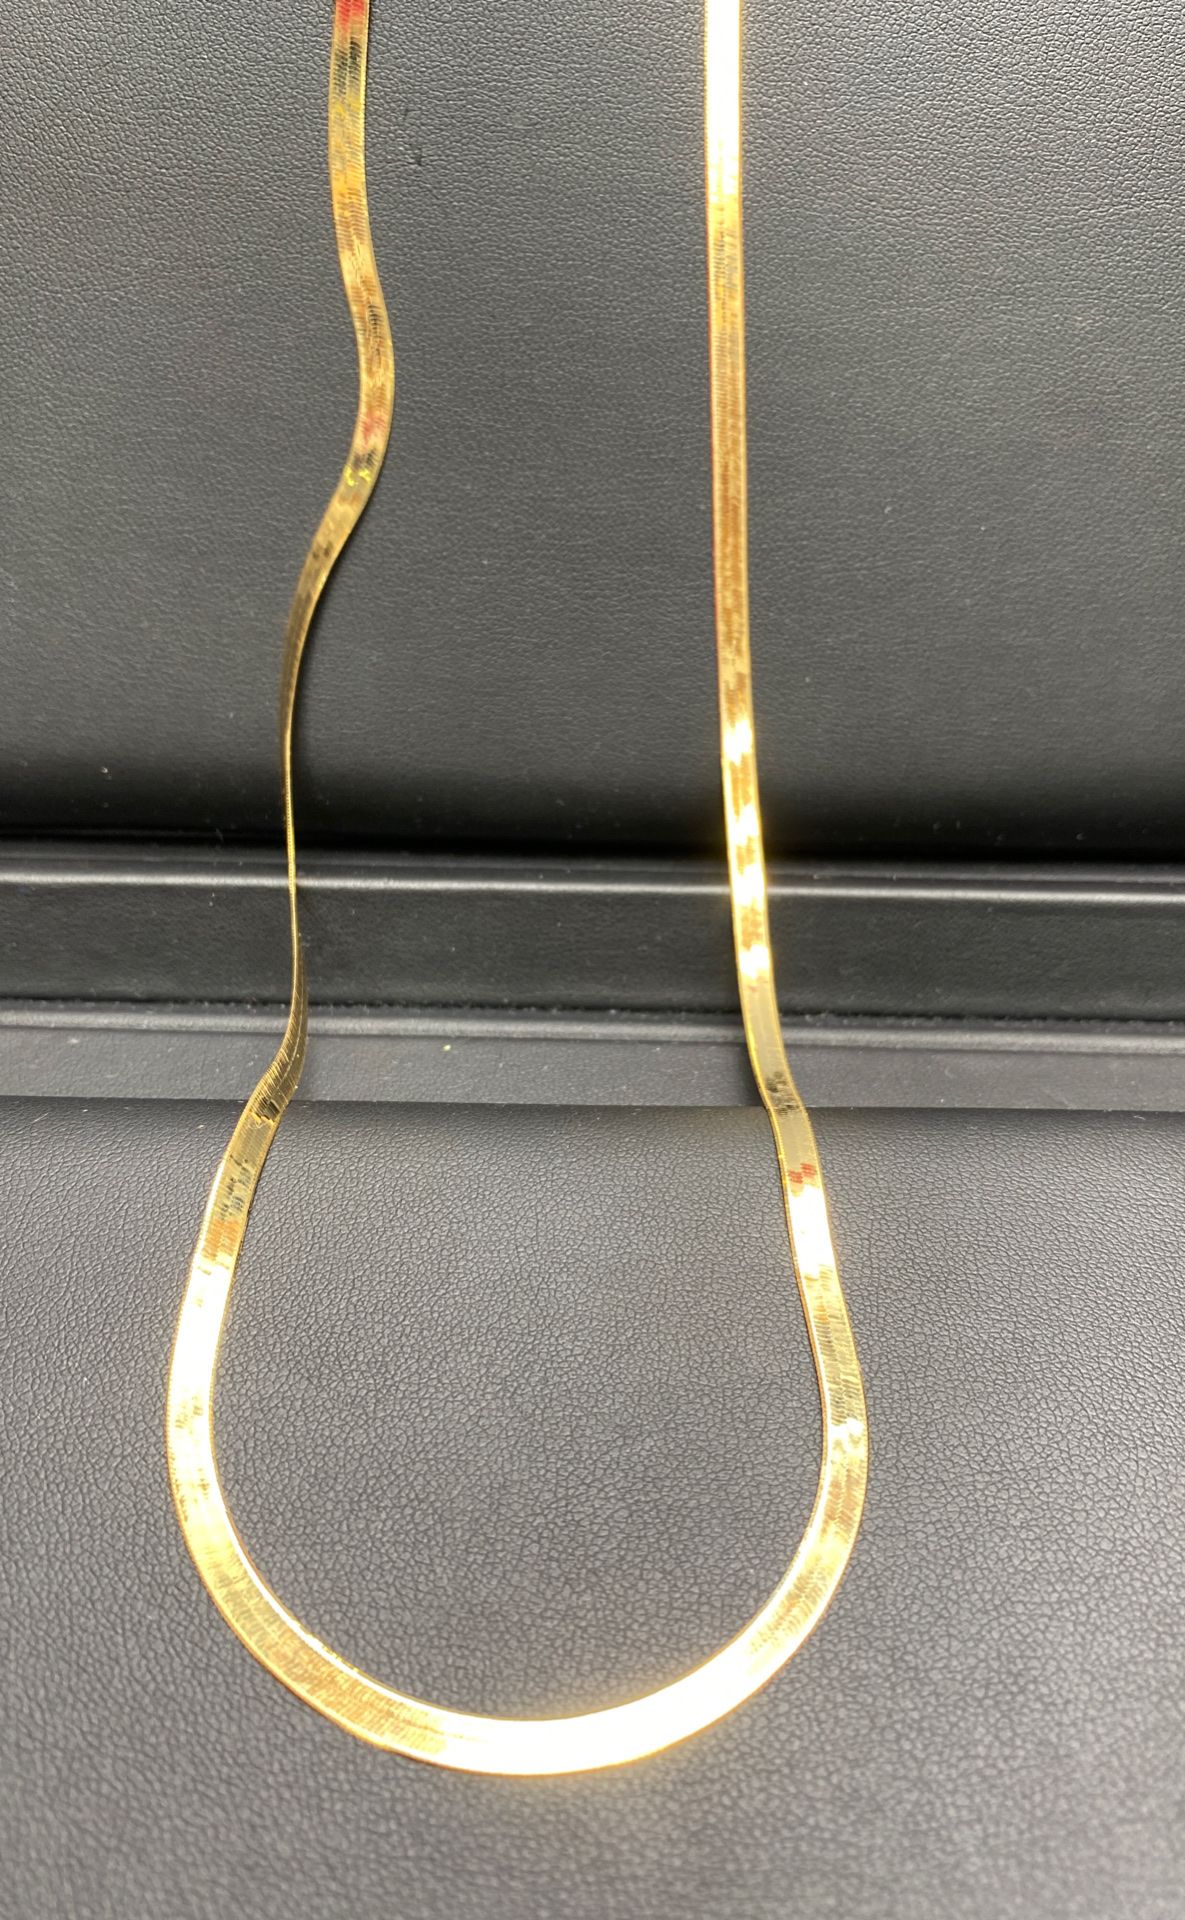 10k real solid gold herringbone chain 22” 4mm